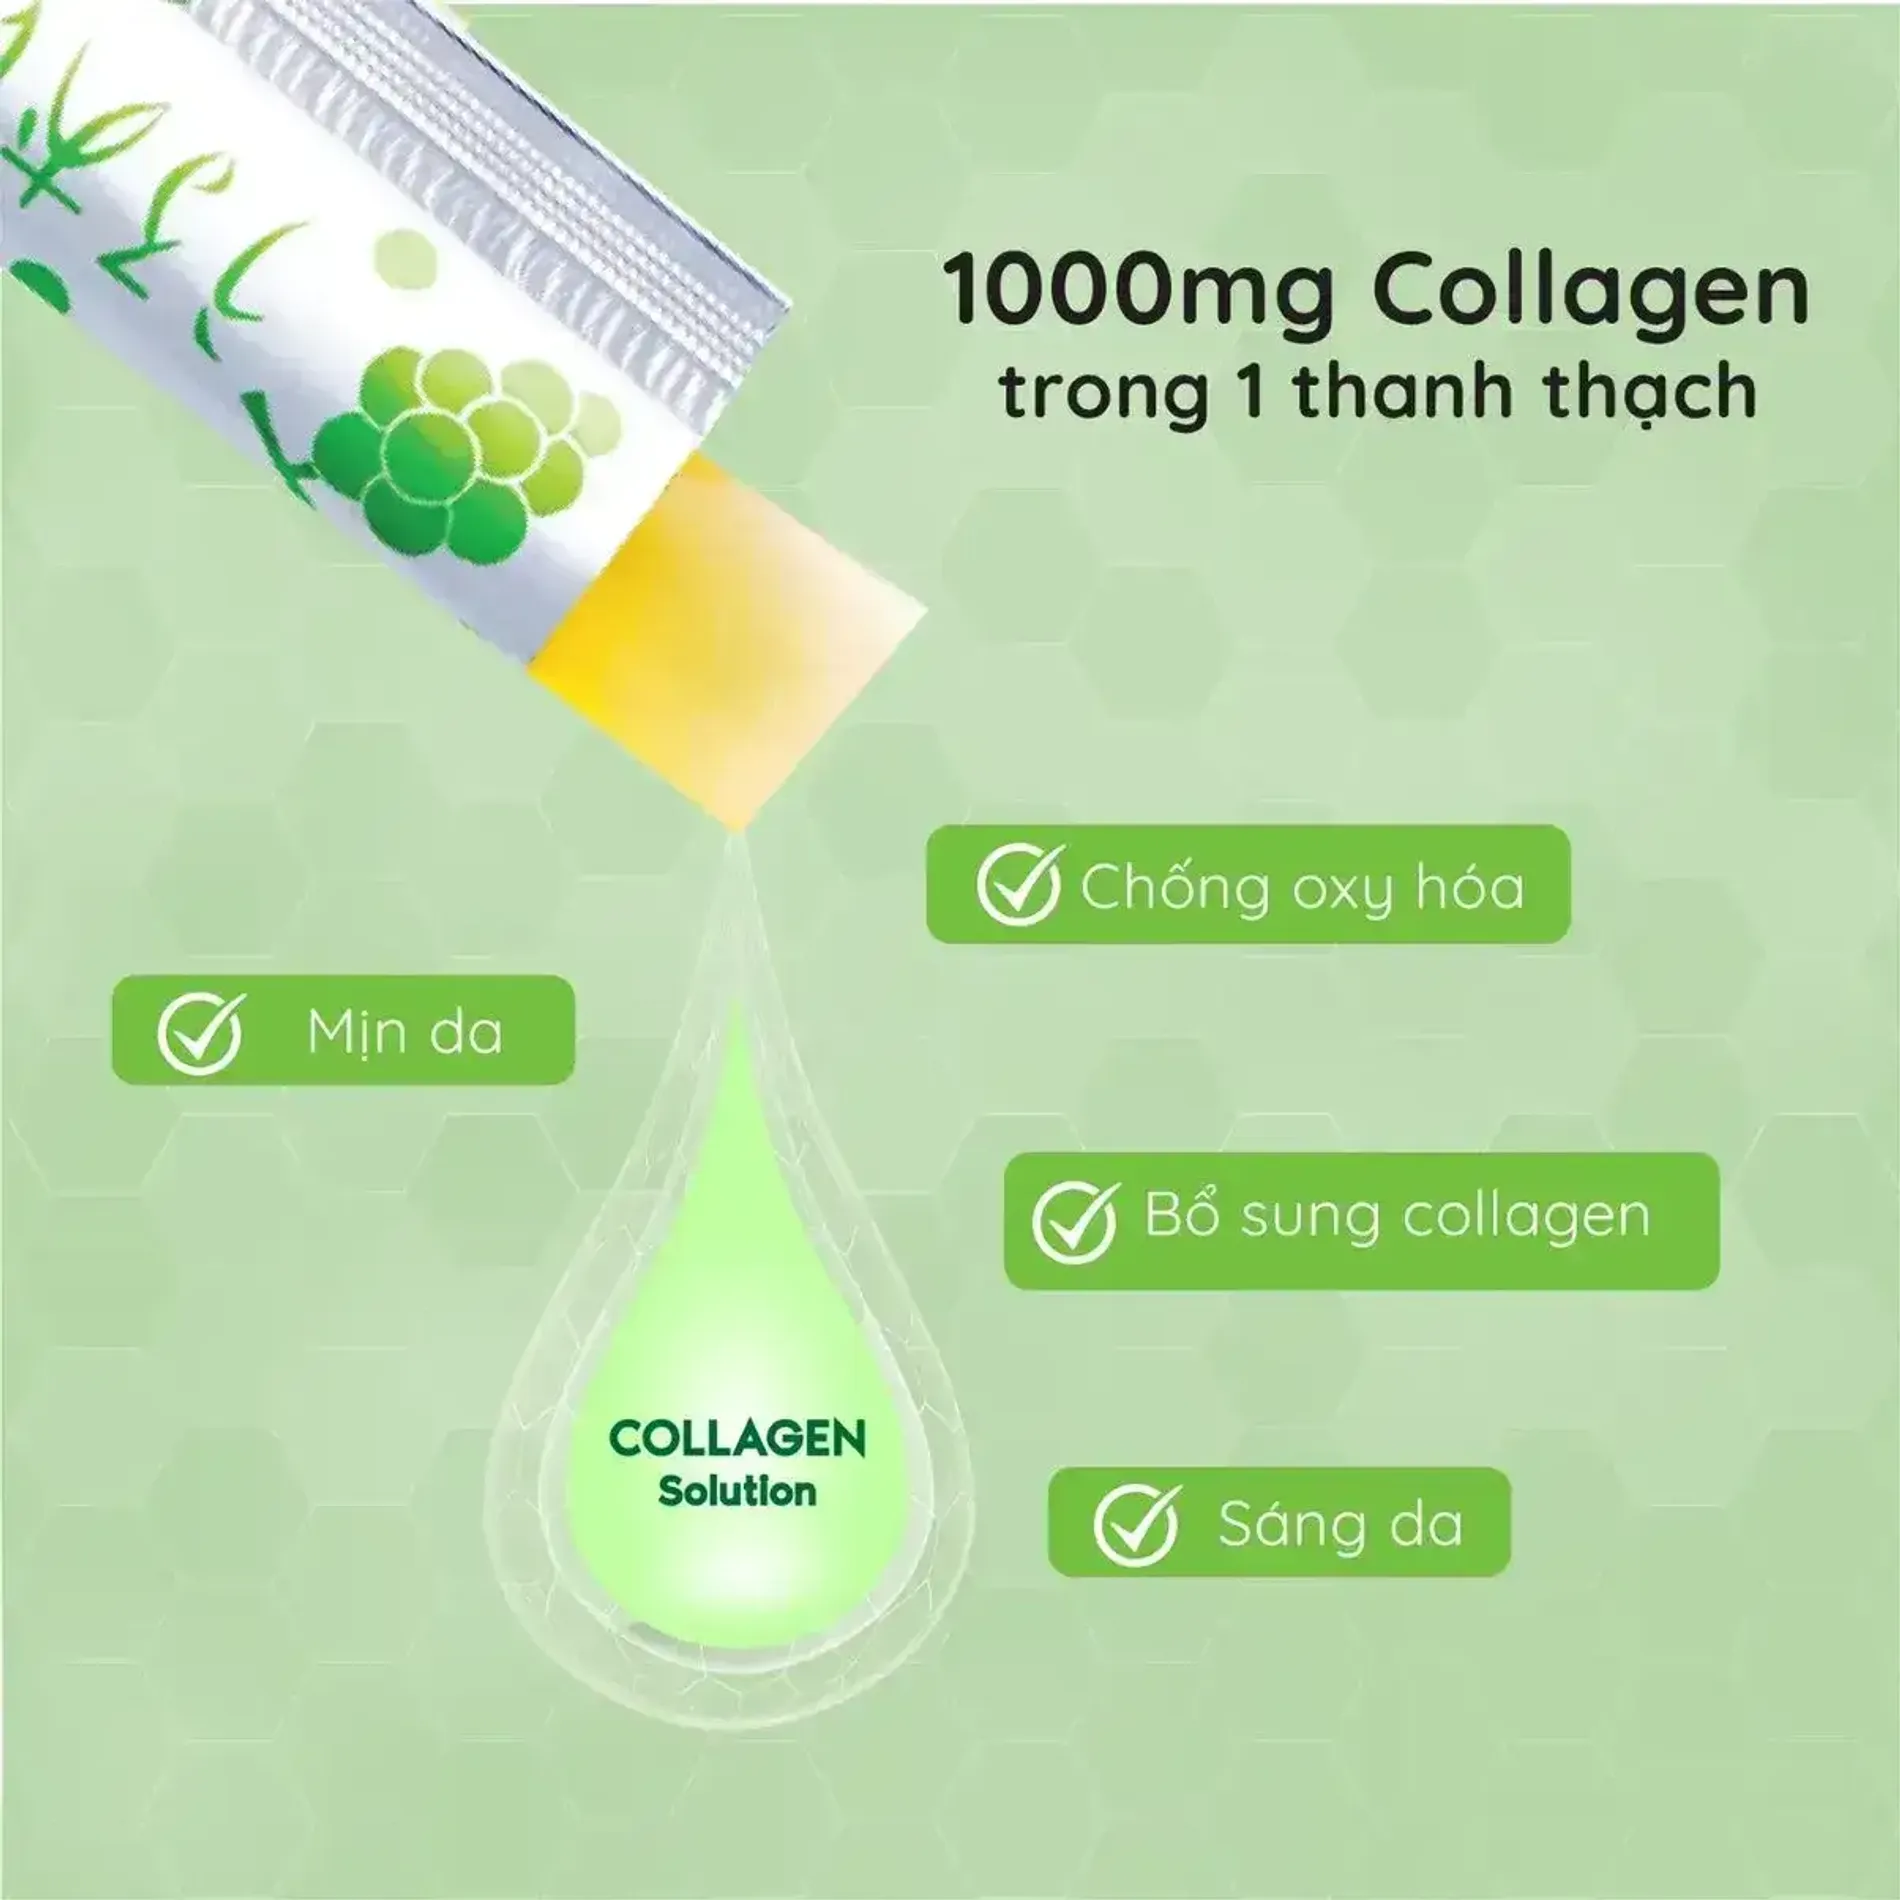 thach-bo-sung-collagen-vi-nho-mau-don-aishitoto-collagen-jelly-muscat-30-goi-3